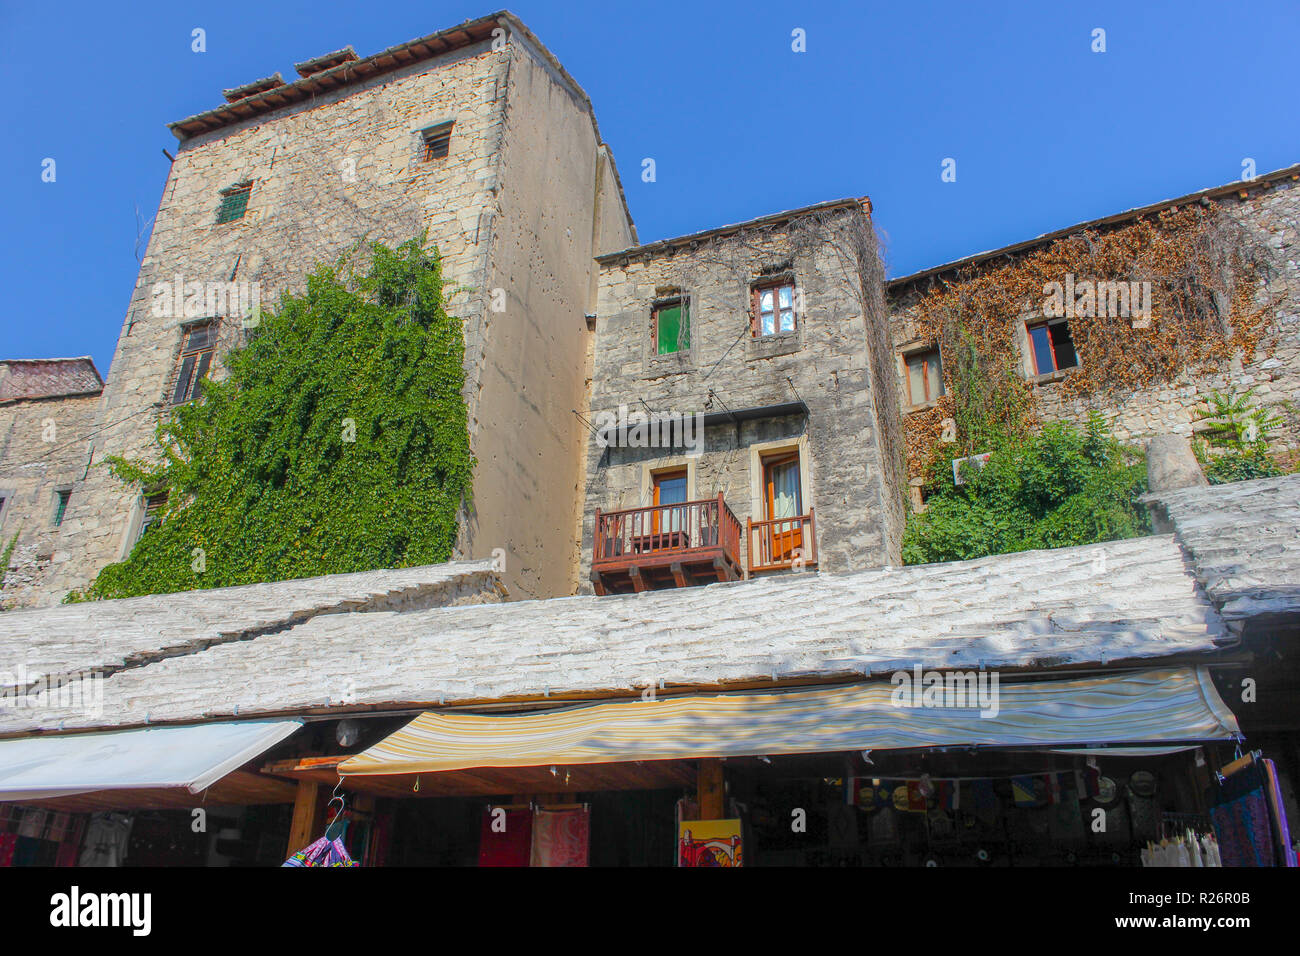 Août 2013, Mostar. Les bâtiments en pierre traditionnel avec balcon terrasse dans la vieille ville. Trous de balle de la guerre sont visibles sur le mur de côté de Banque D'Images